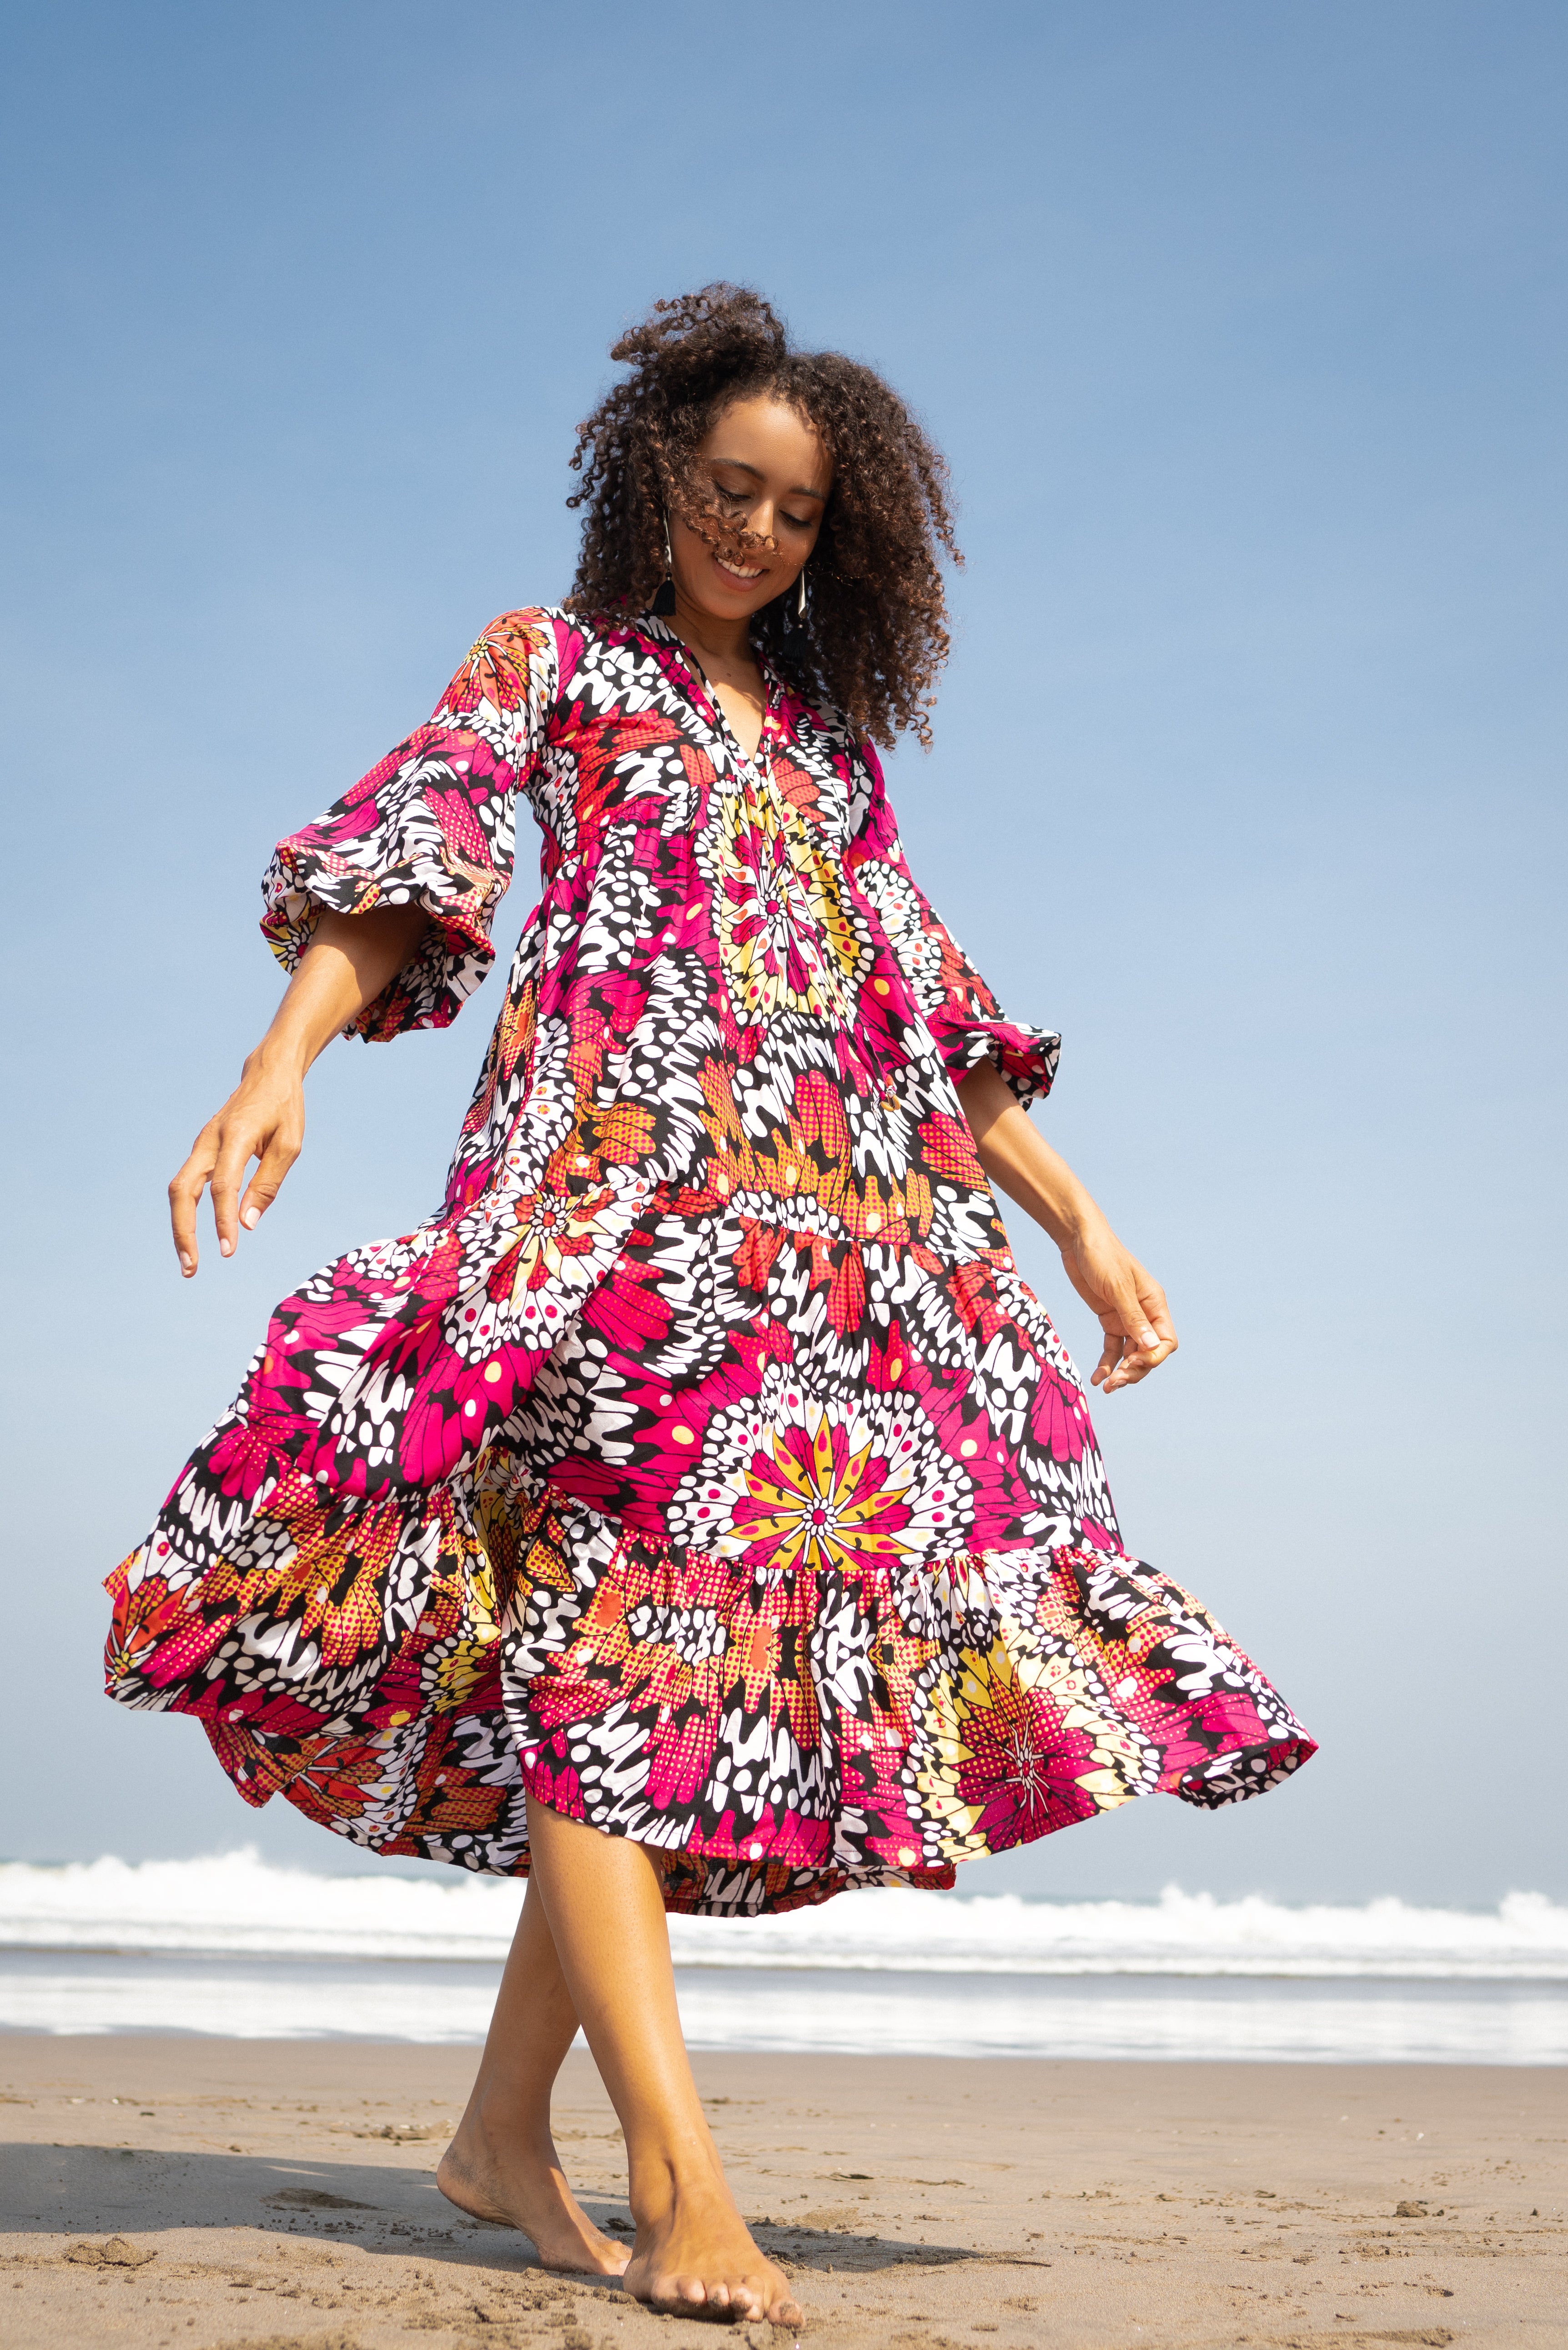 KiKUU Zambia - Women's slim dresses are available in